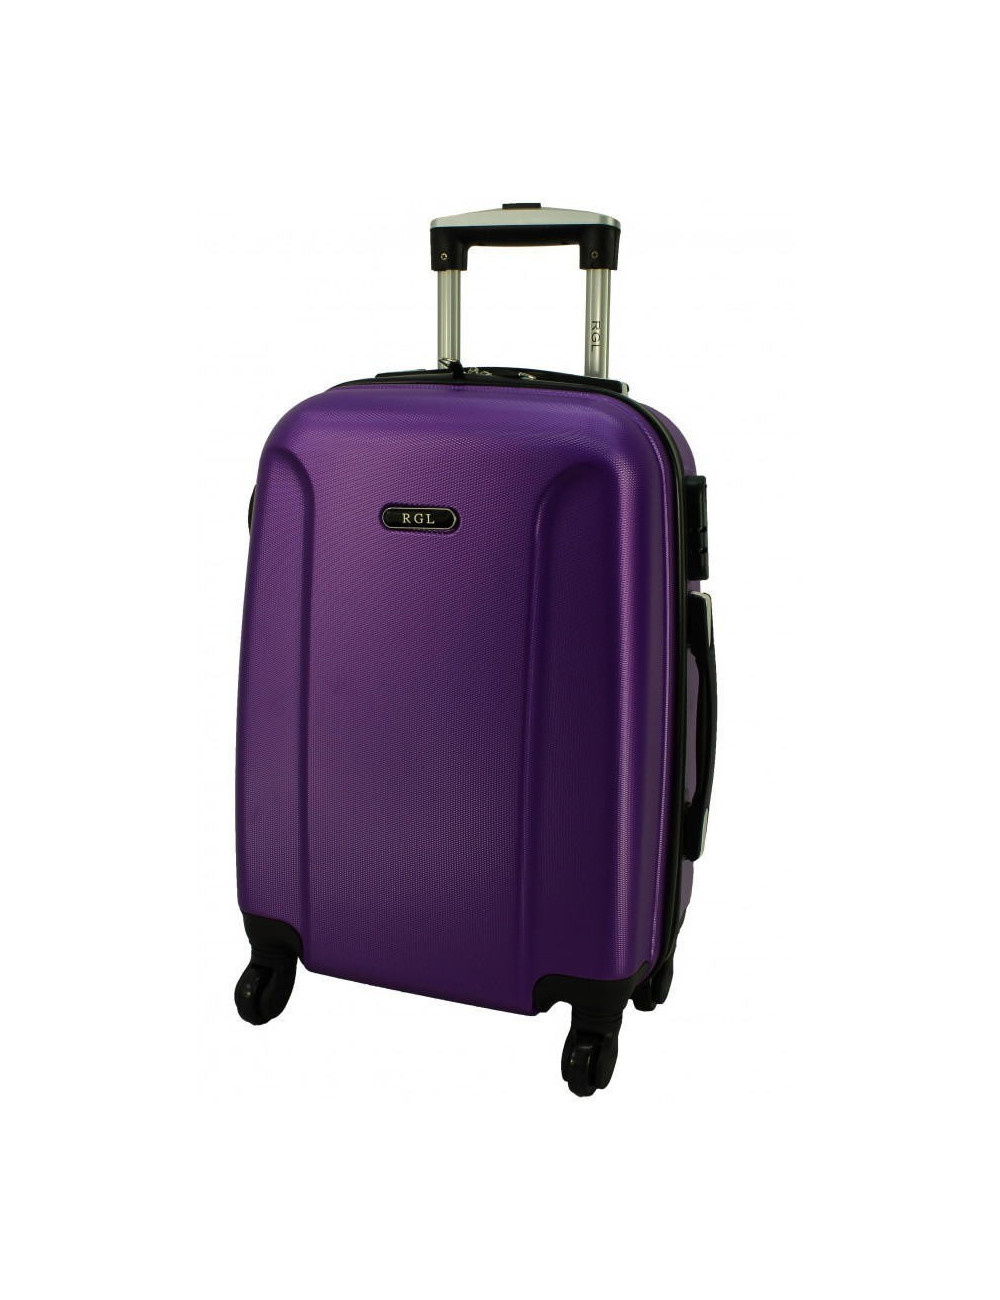 rod Belly brittle Średnia walizka podróżna na kółkach ABS 790 XXL RGL - hurtowniawalizek.pl